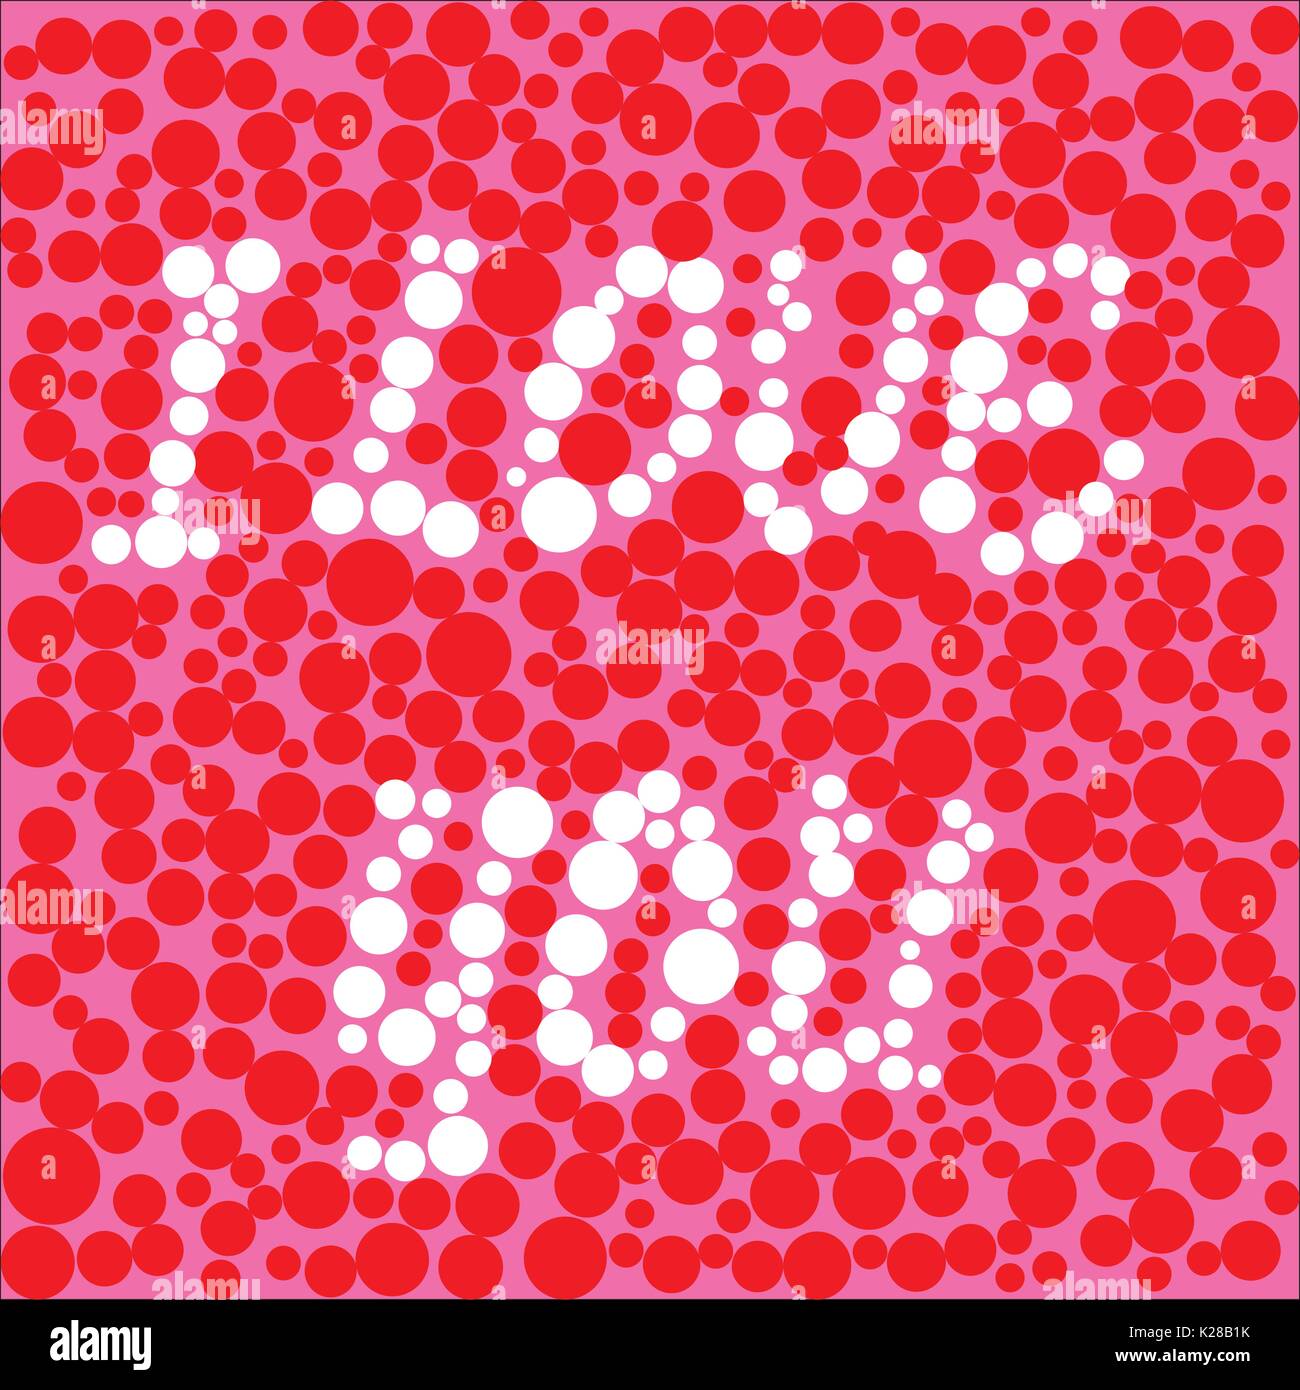 Hintergrund der Kreise in verschiedenen Größen mit der Aufschrift "Ich liebe Dich", Vector Illustration Stock Vektor